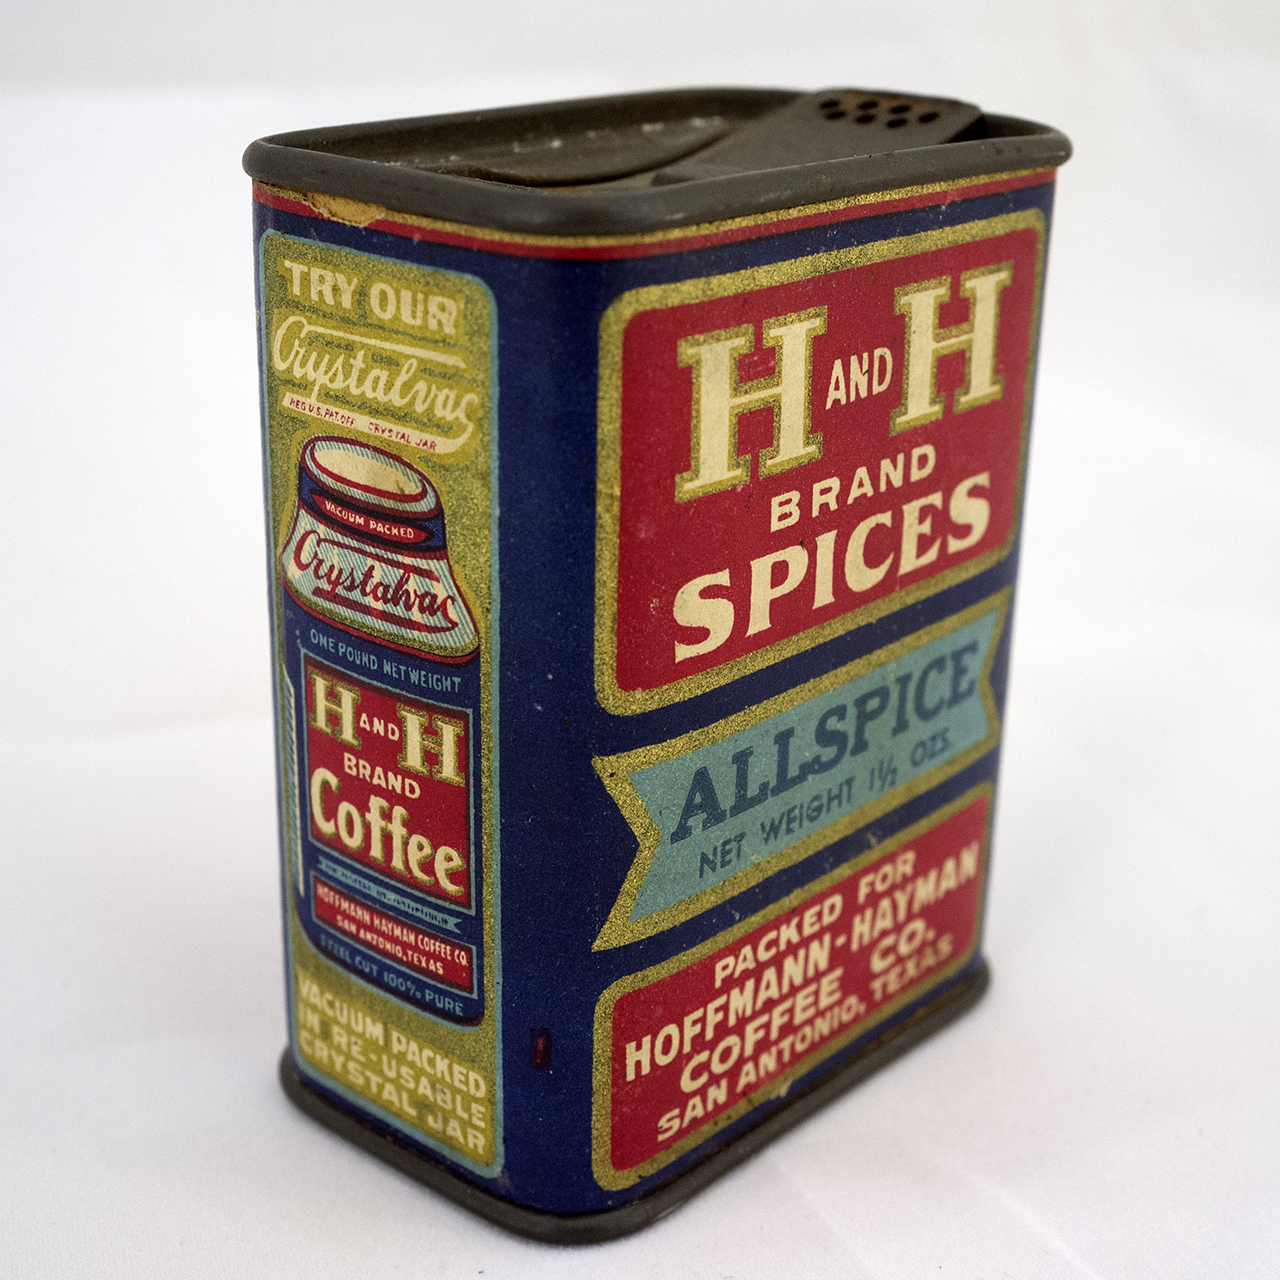 H and H Spices Allspice 1.5oz